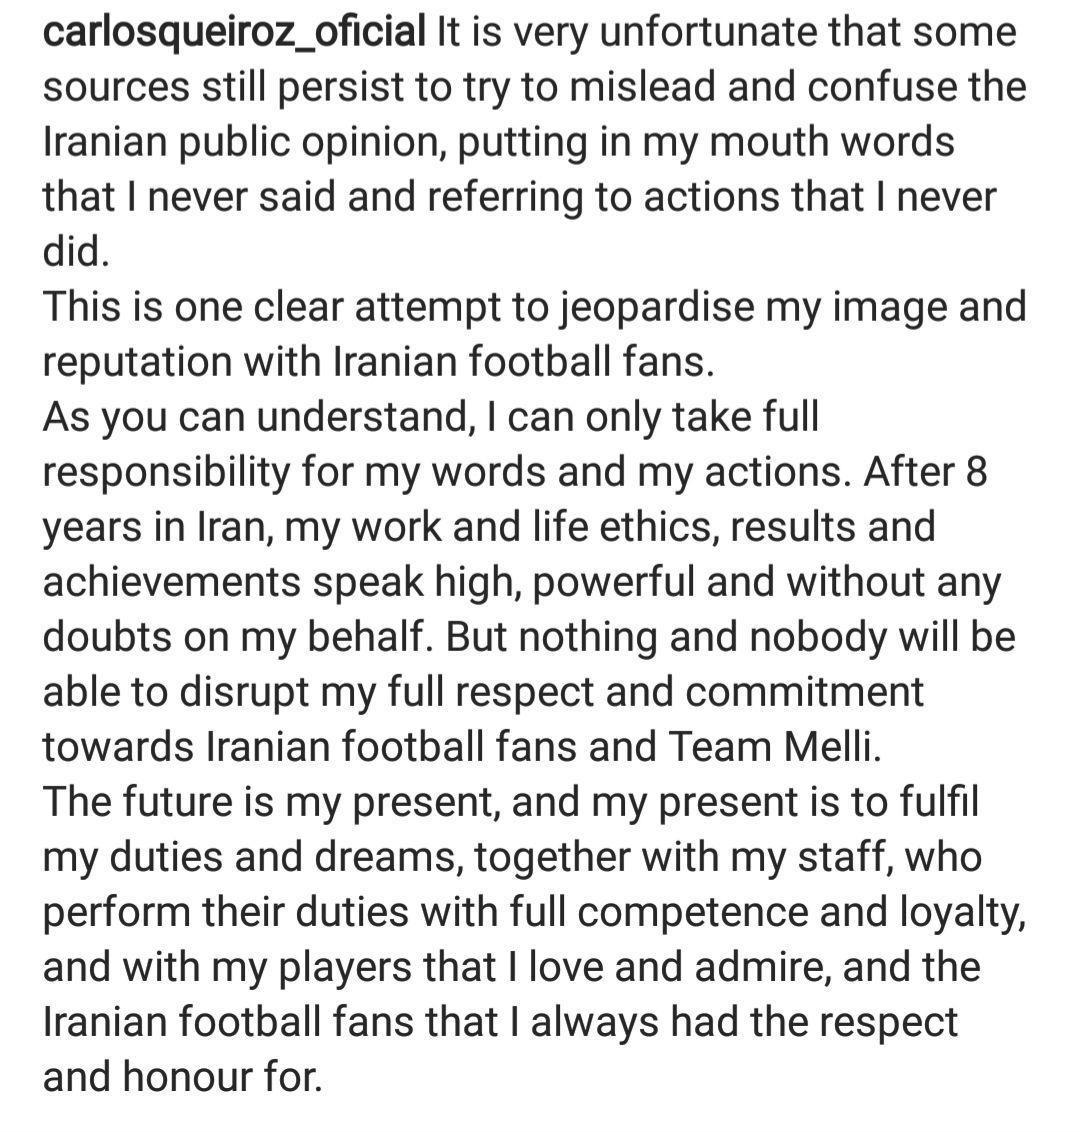 پیام کی‌روش به هواداران تیم ملی: هیچ‌کس نمی‌تواند احترام بین ما را بر هم بزند